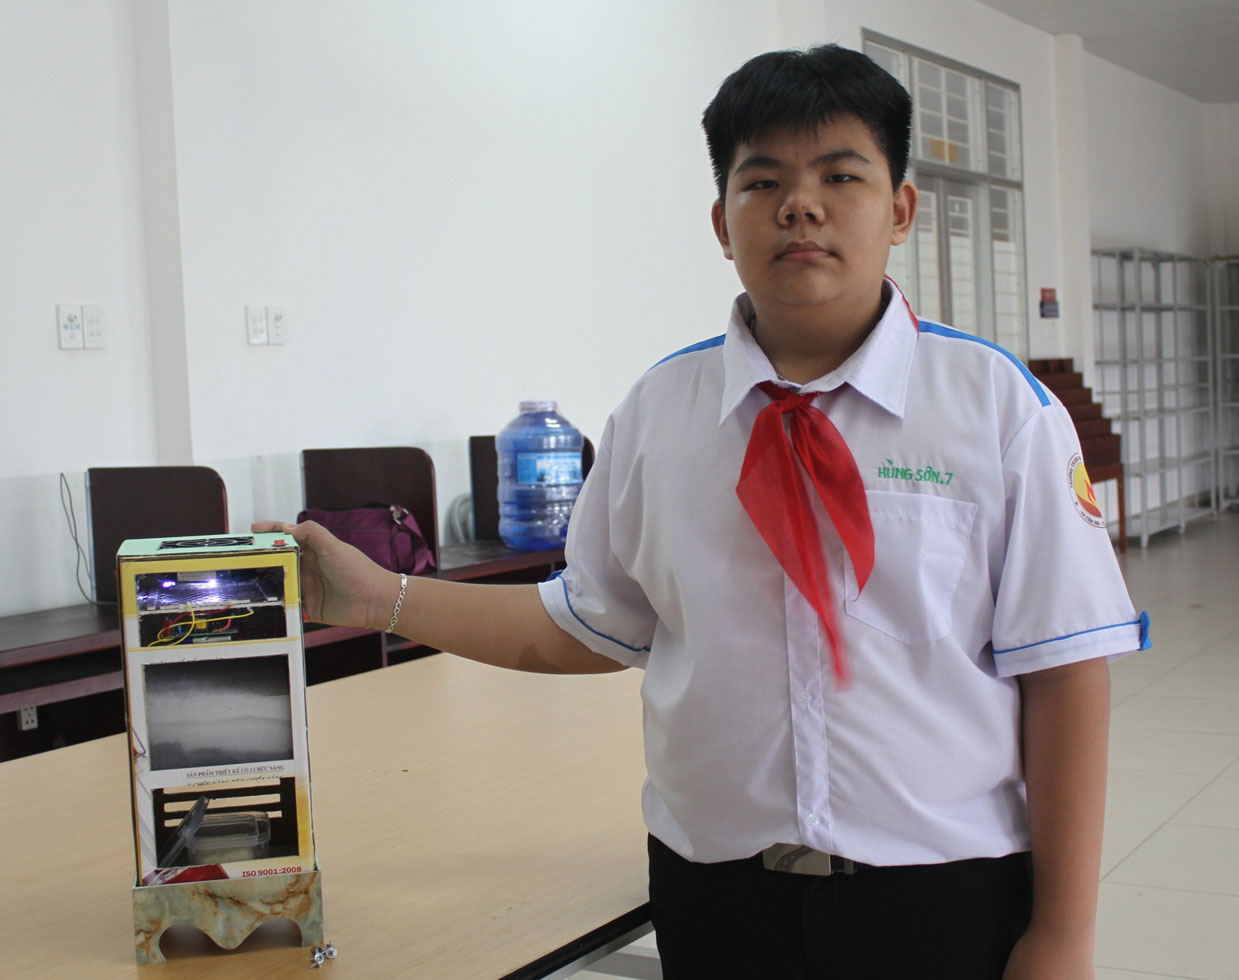 Đề tài Máy bắt muỗi 3 trong 1 của em Nguyễn Trần Hùng Sơn đoạt giải ba tại cuộc thi Sáng tạo dành cho thanh, thiếu niên, nhi đồng tỉnh Long An lần thứ 13 năm 2020